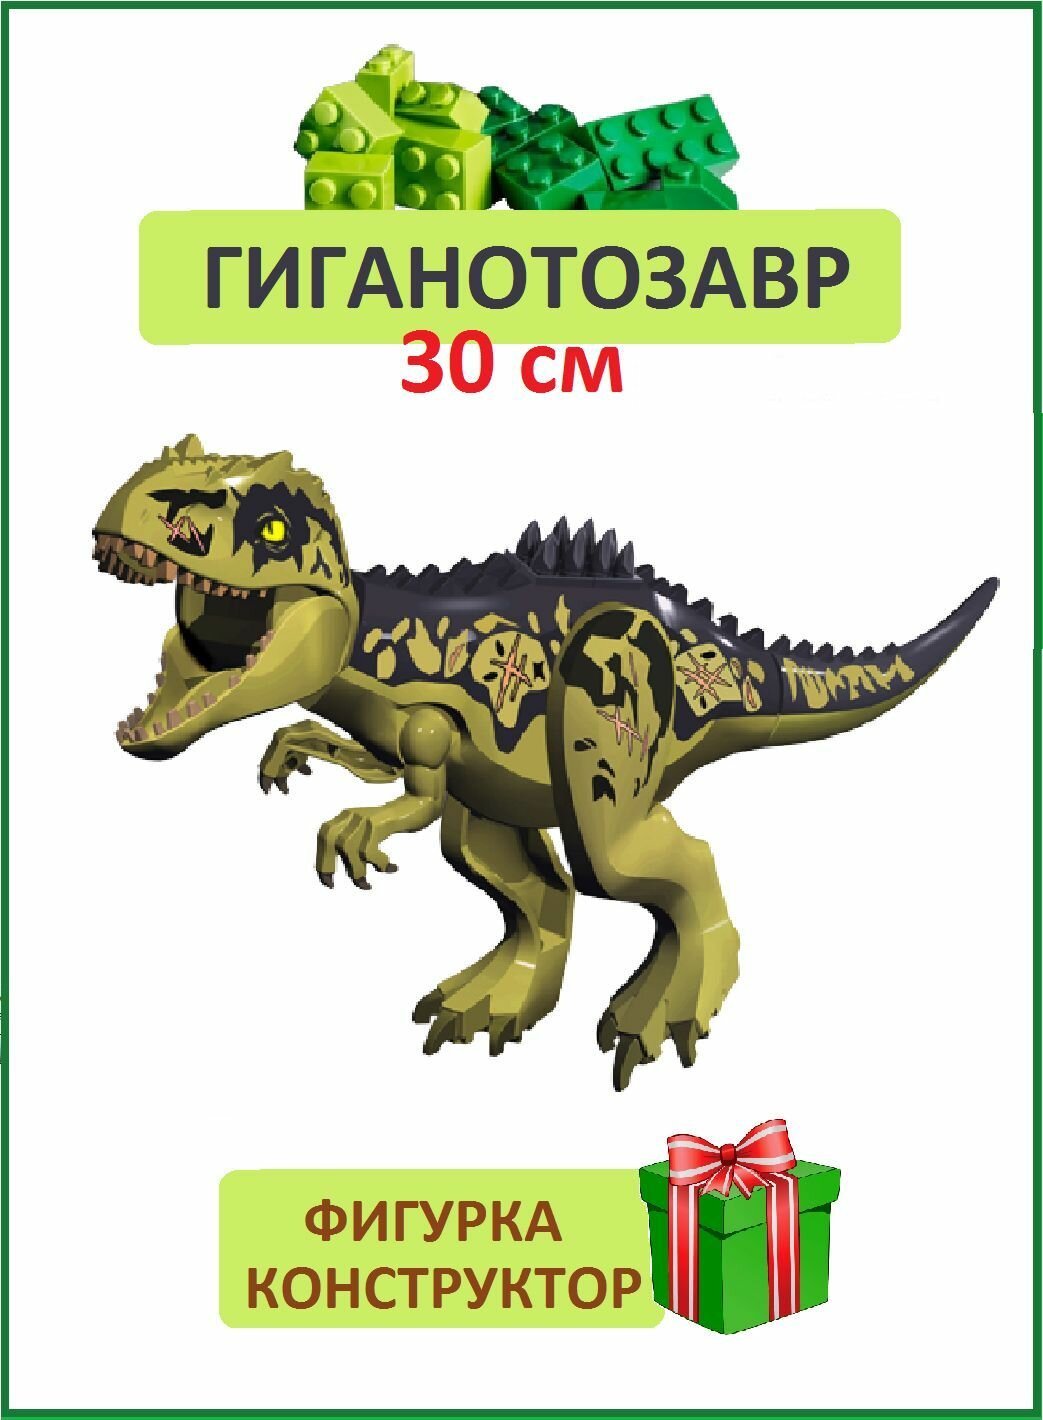 Гигантозавр, Динозавр фигурка из серии Парк Юрского периода, 30см